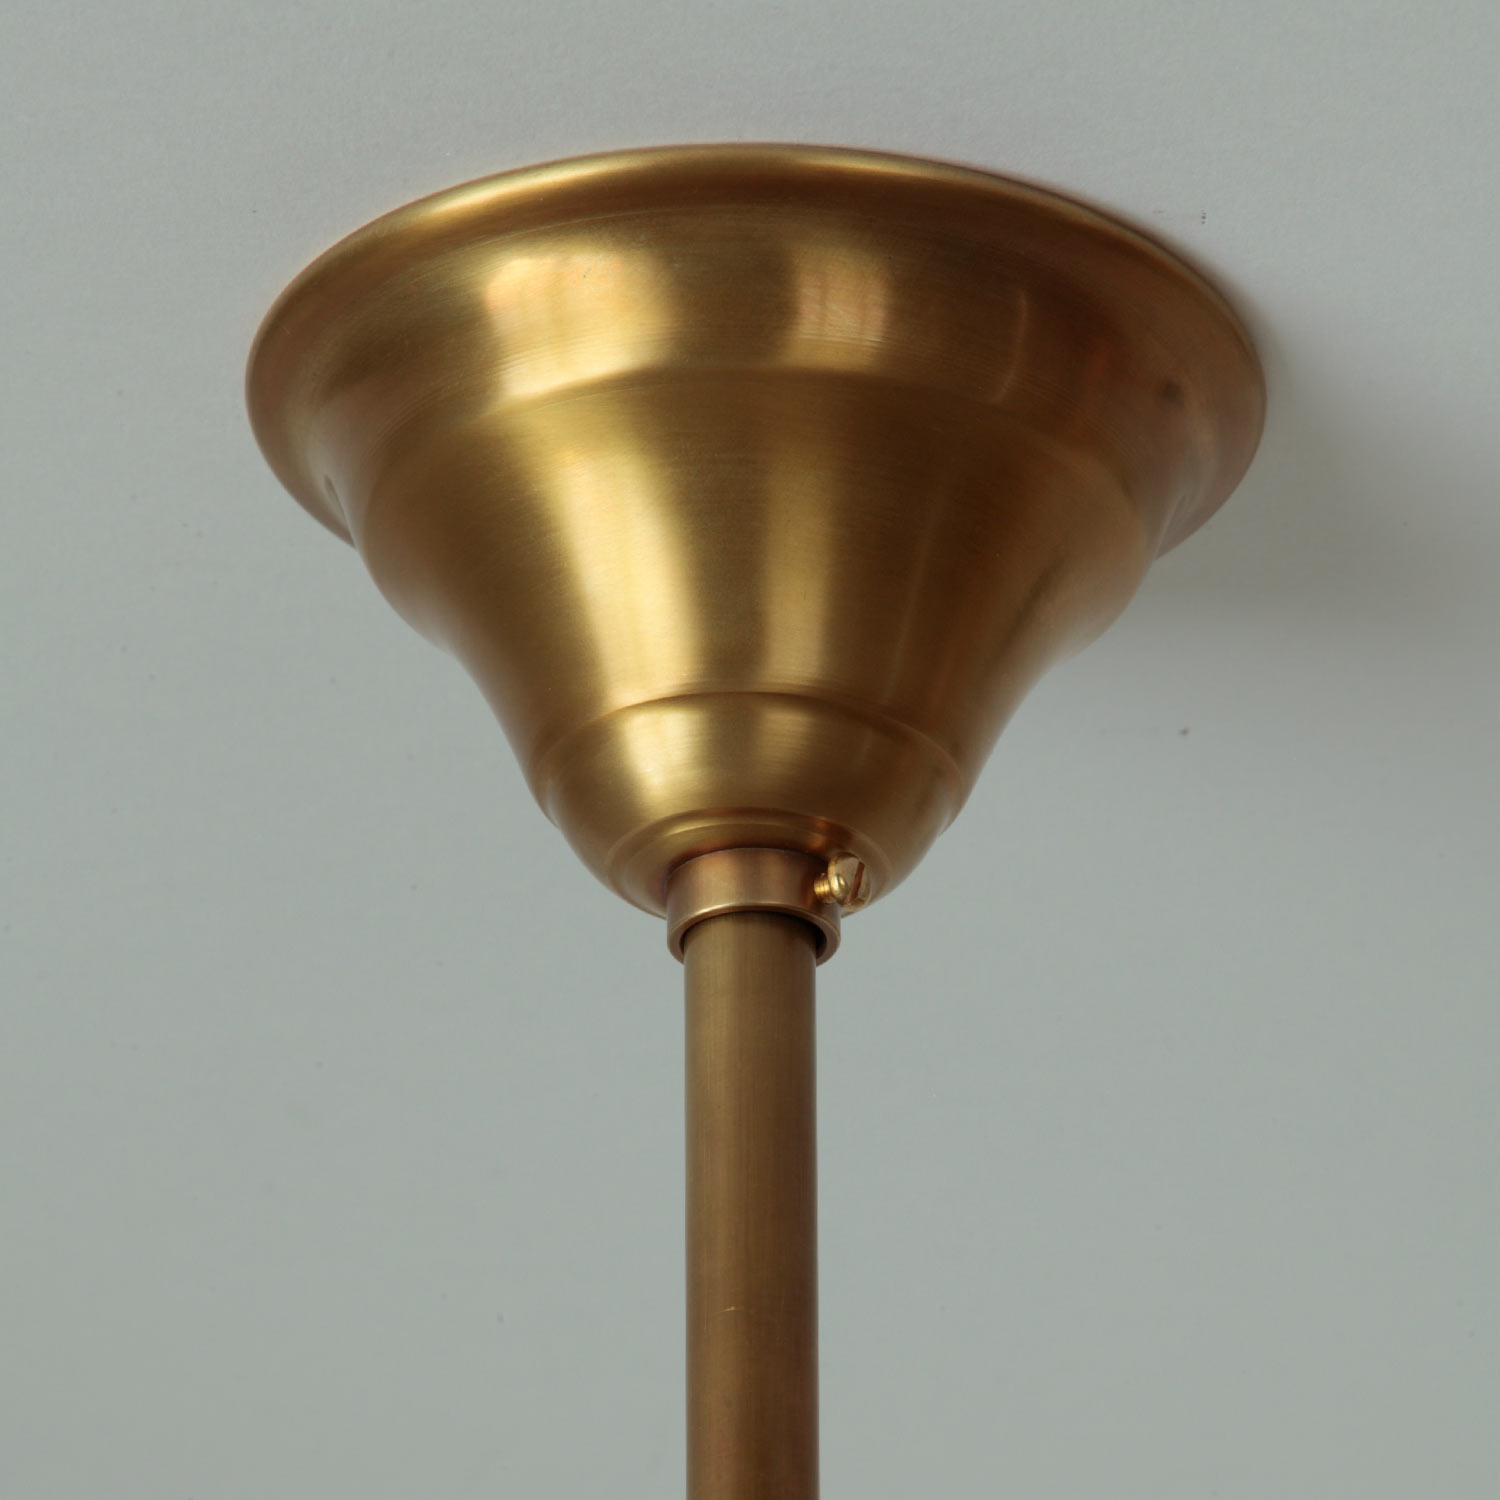 Kugelglas-Hängeleuchte an Pendelrohr (Ø 30 cm, Messing patiniert): Messing goldgelb patiniert: Deckenbaldachin mit Pendelrohr